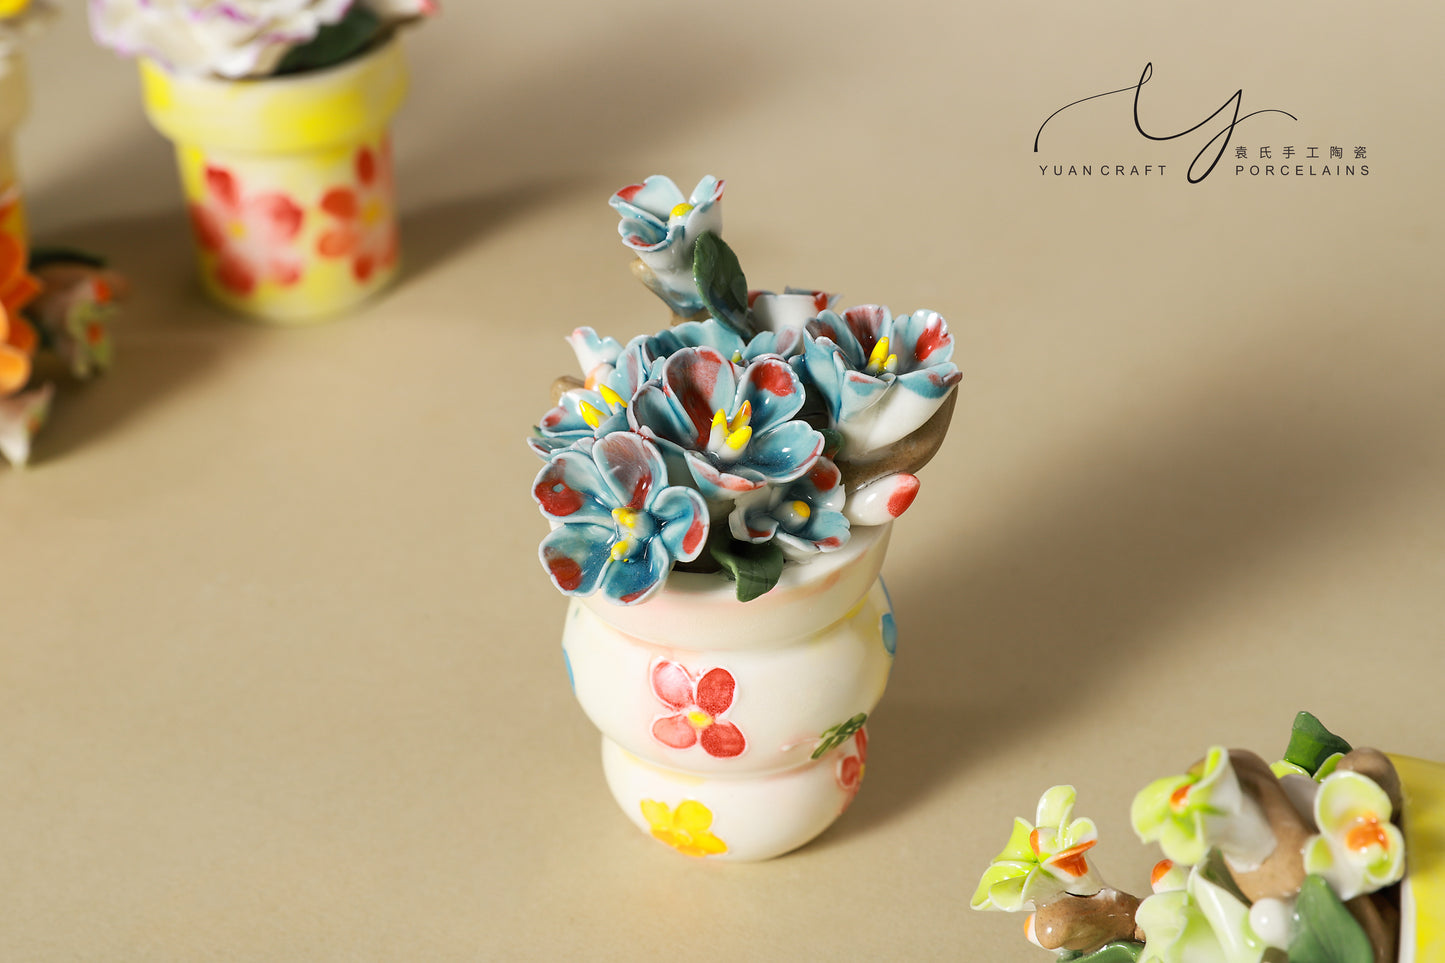 Unique Handmade Bloom Porcelain Passive Diffuser, Ceramic Fragrance Diffuser